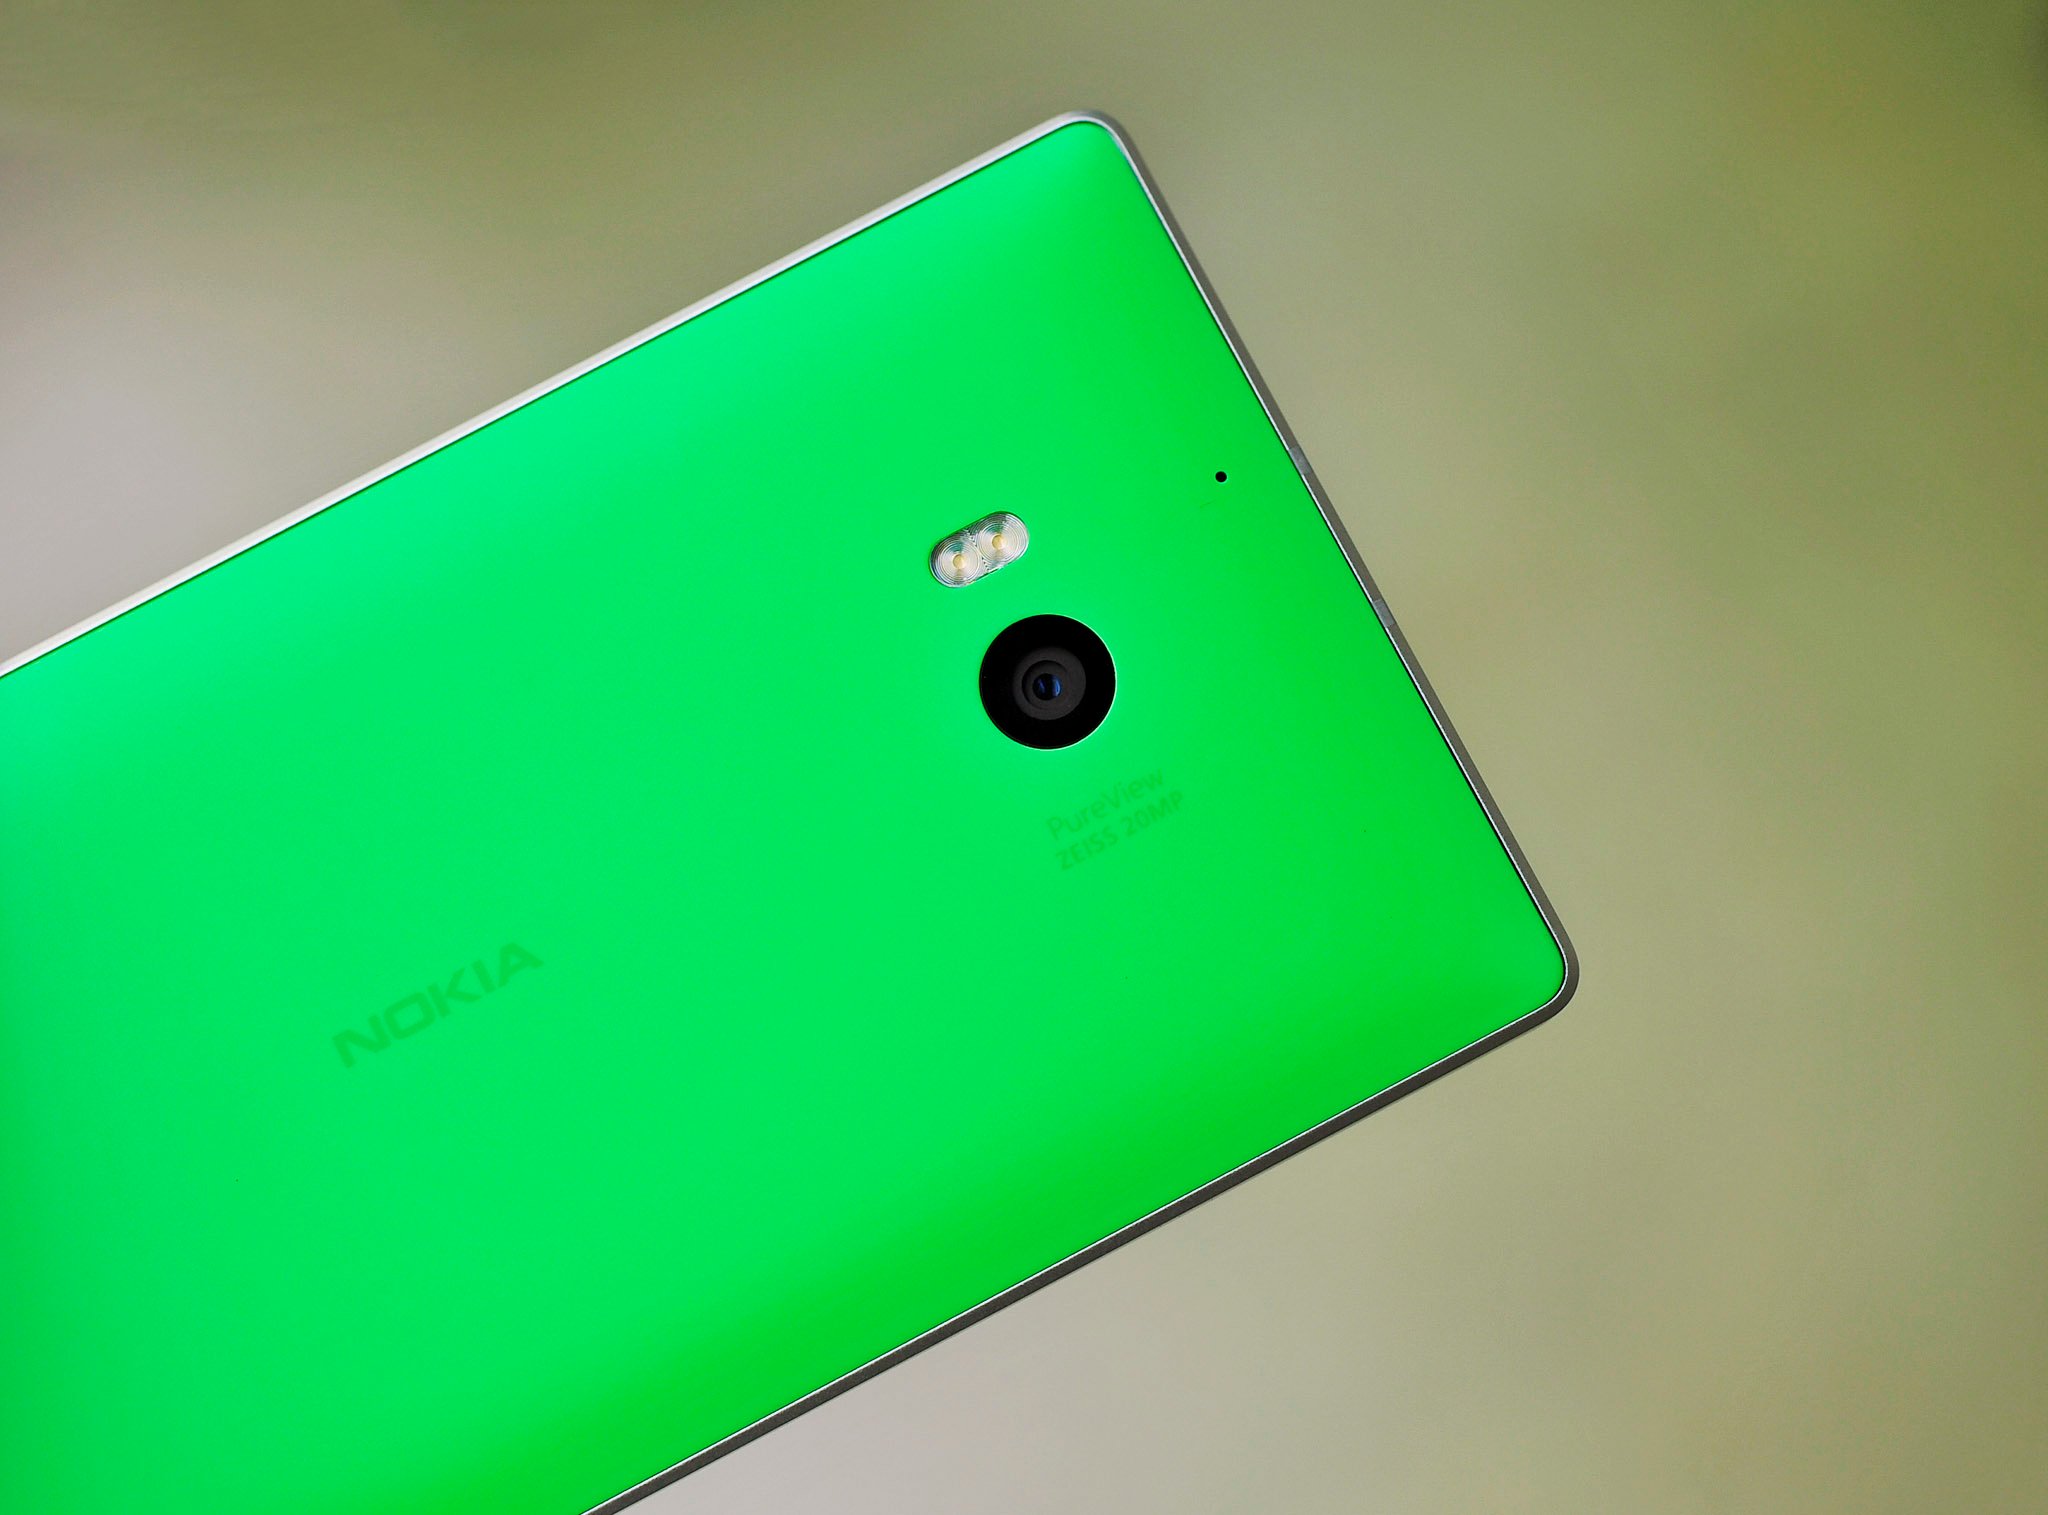 Lumia_930_camera_green.jpg